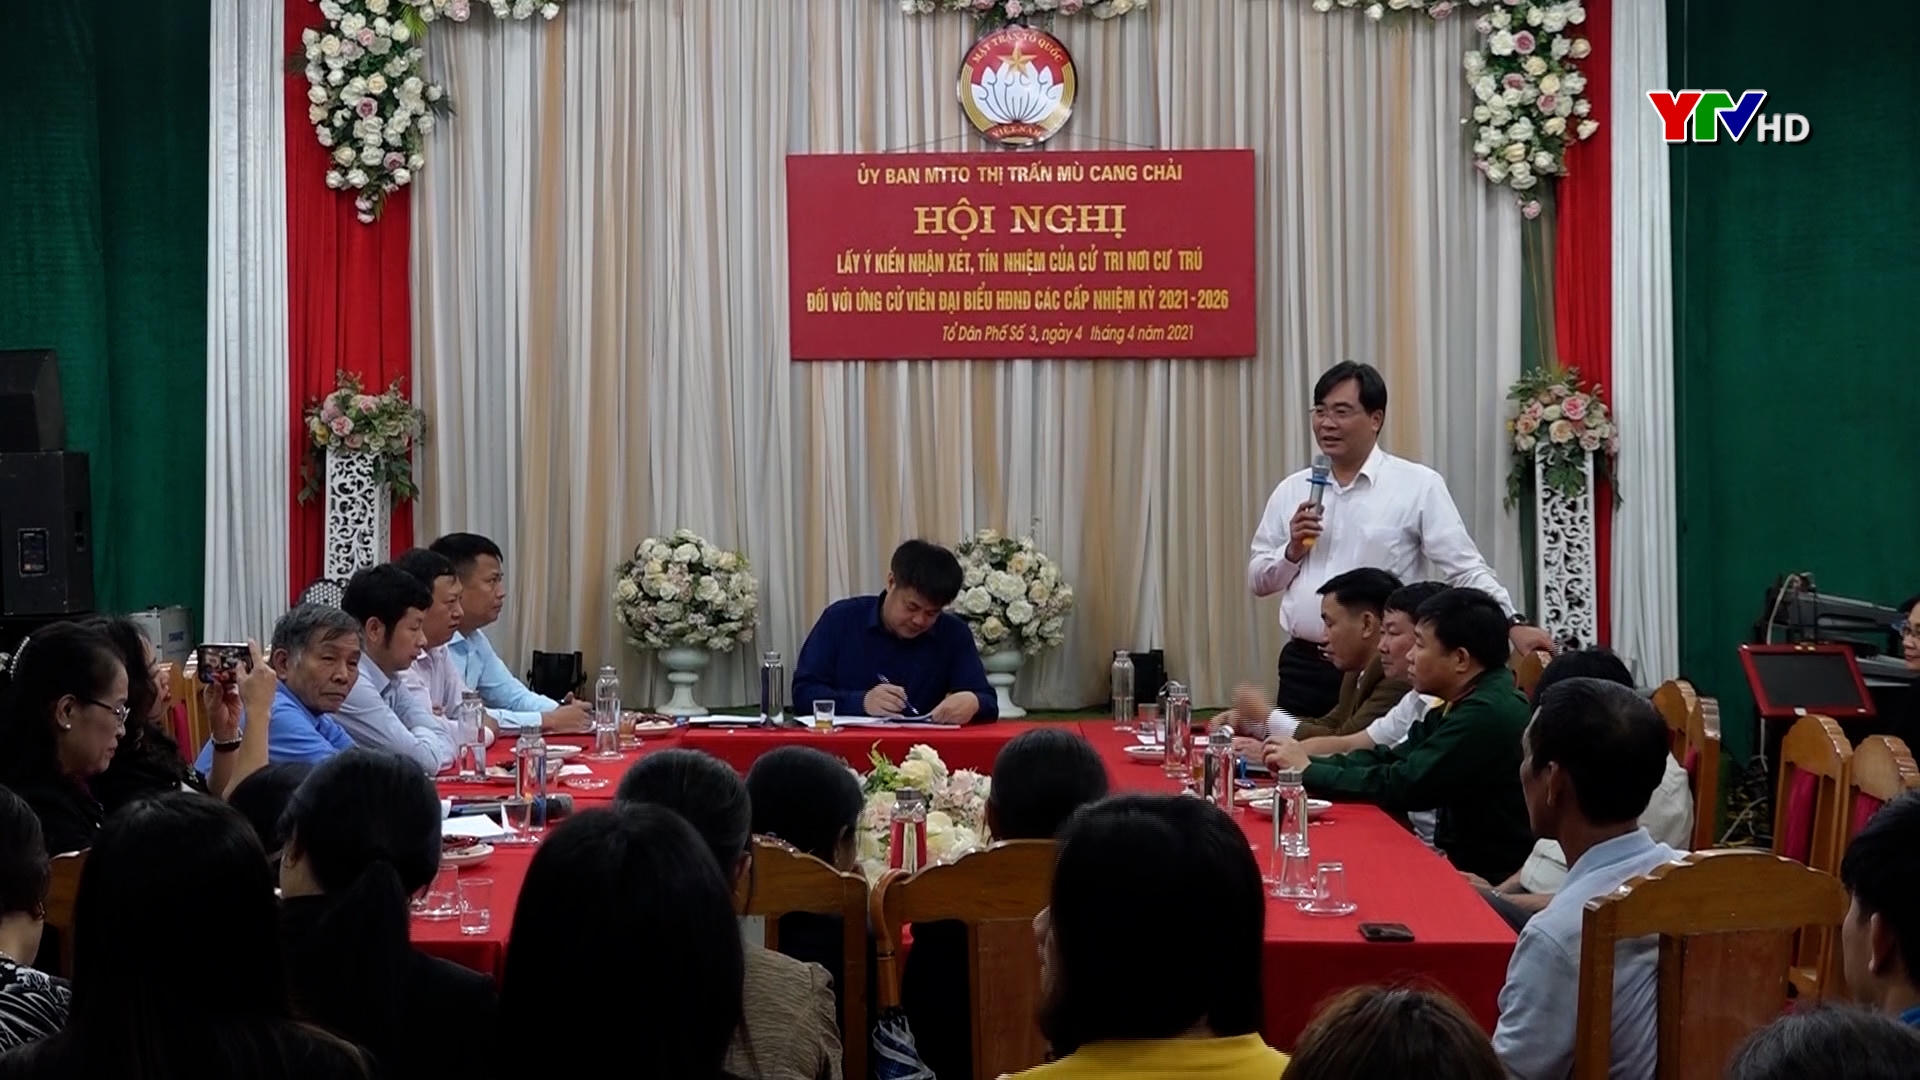 Thị trấn Mù Cang Chải, huyện Mù Cang Chải lấy ý kiến nhận xét của cử tri đối với người ứng cử ĐBQH và đại biểu HĐND các cấp